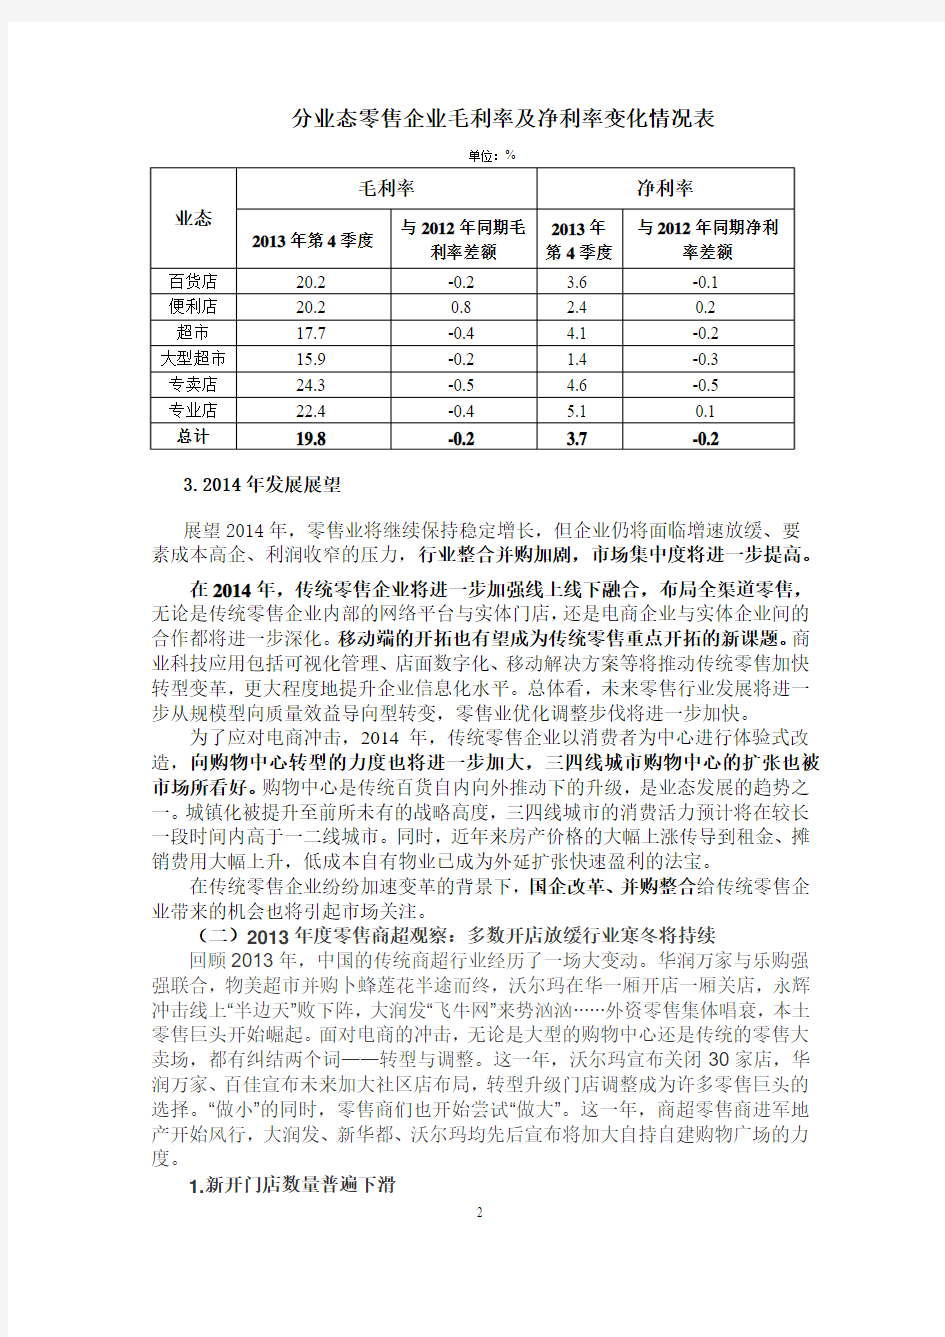 2013年中国零售业发展情况(完整版)